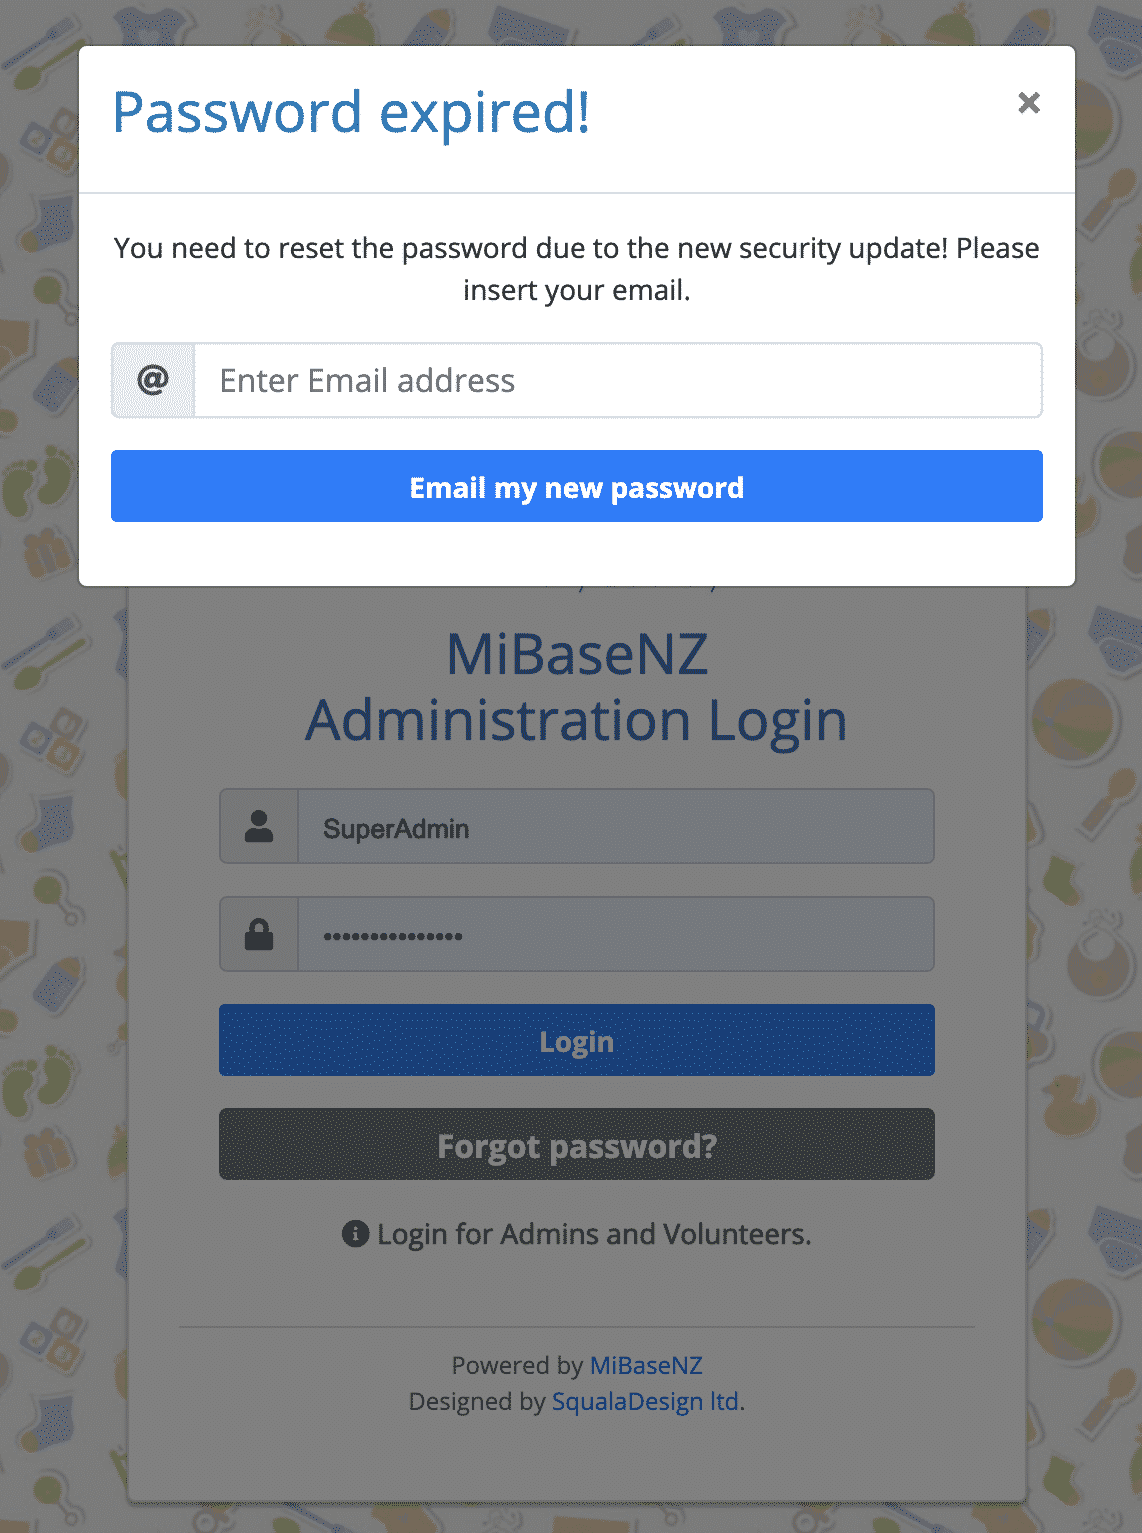 Password expired alert box